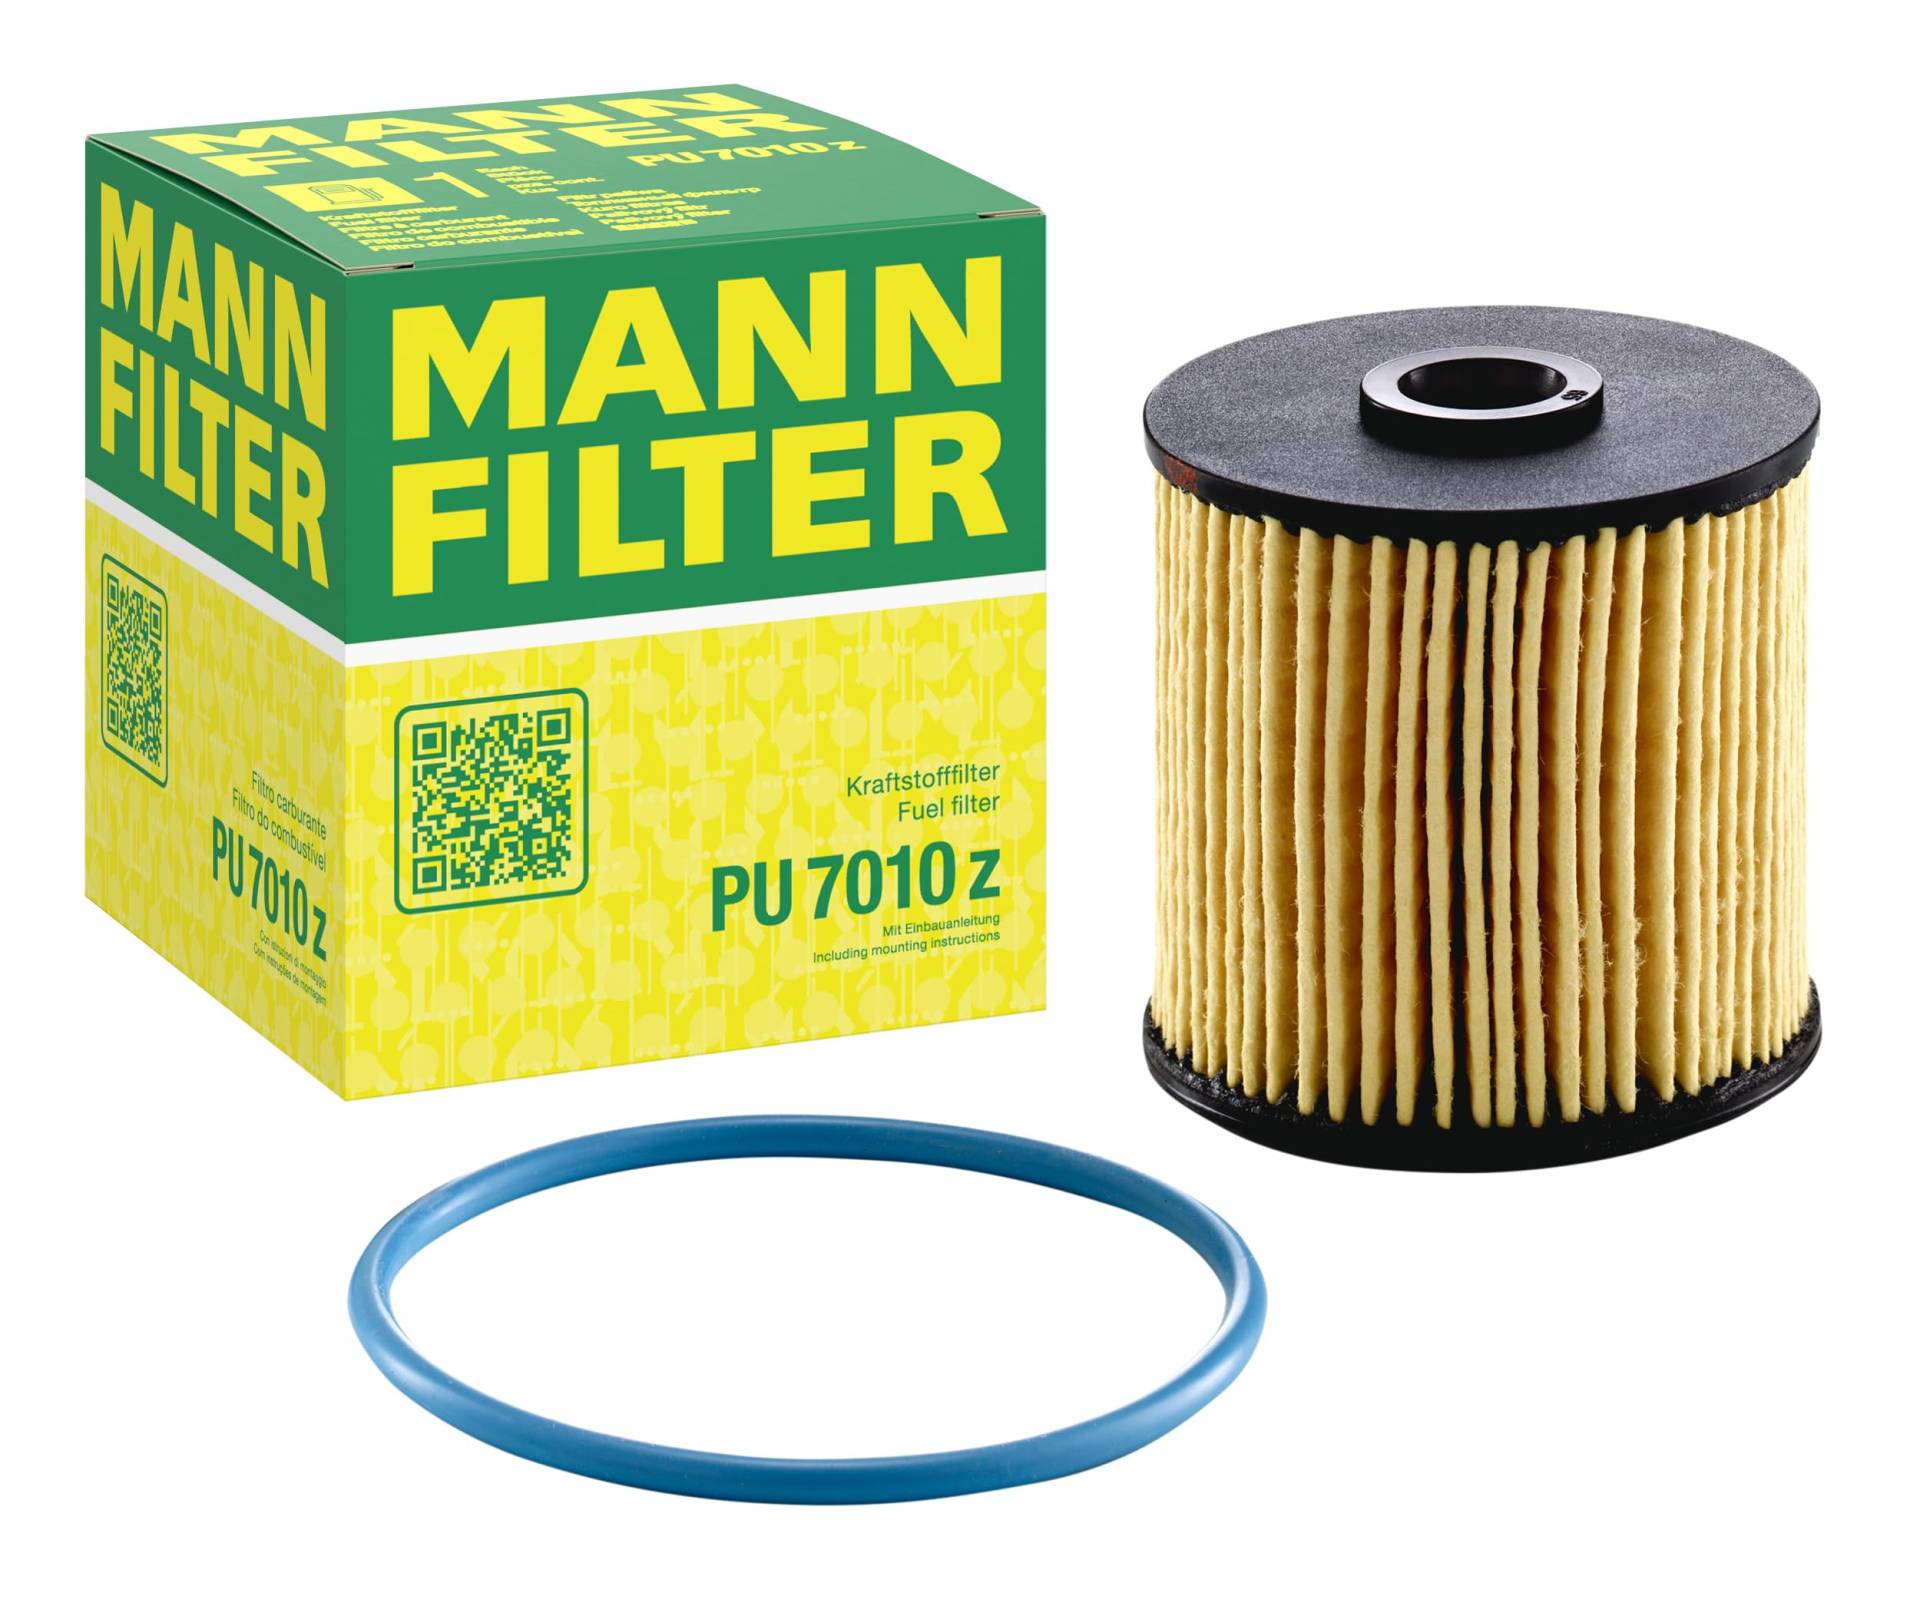 MANN-FILTER PU 7010 z Kraftstofffilter – Kraftstofffilter Satz mit Dichtung / Dichtungssatz – Für PKW von MANN-FILTER